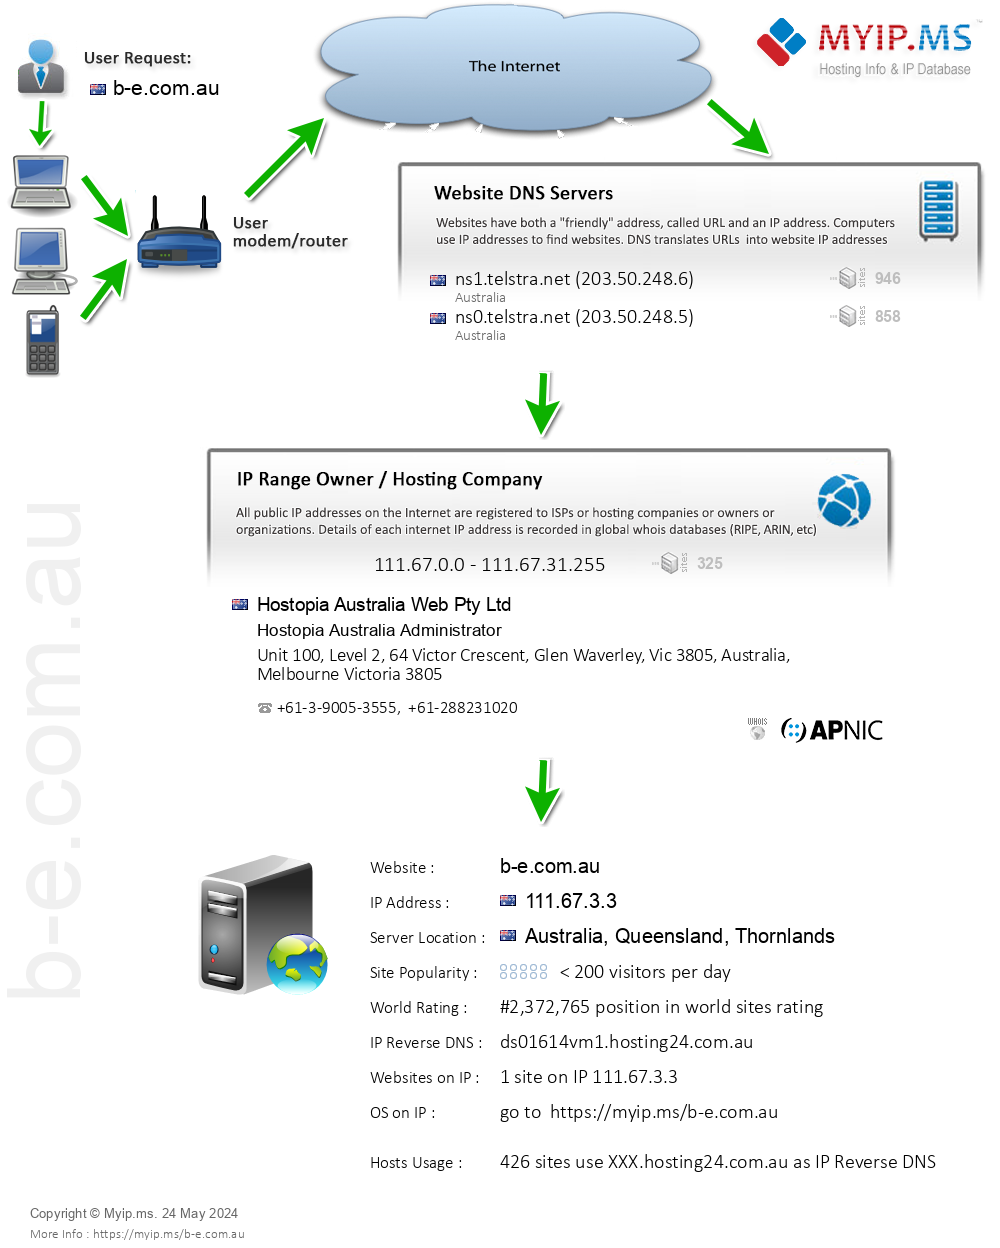 B-e.com.au - Website Hosting Visual IP Diagram